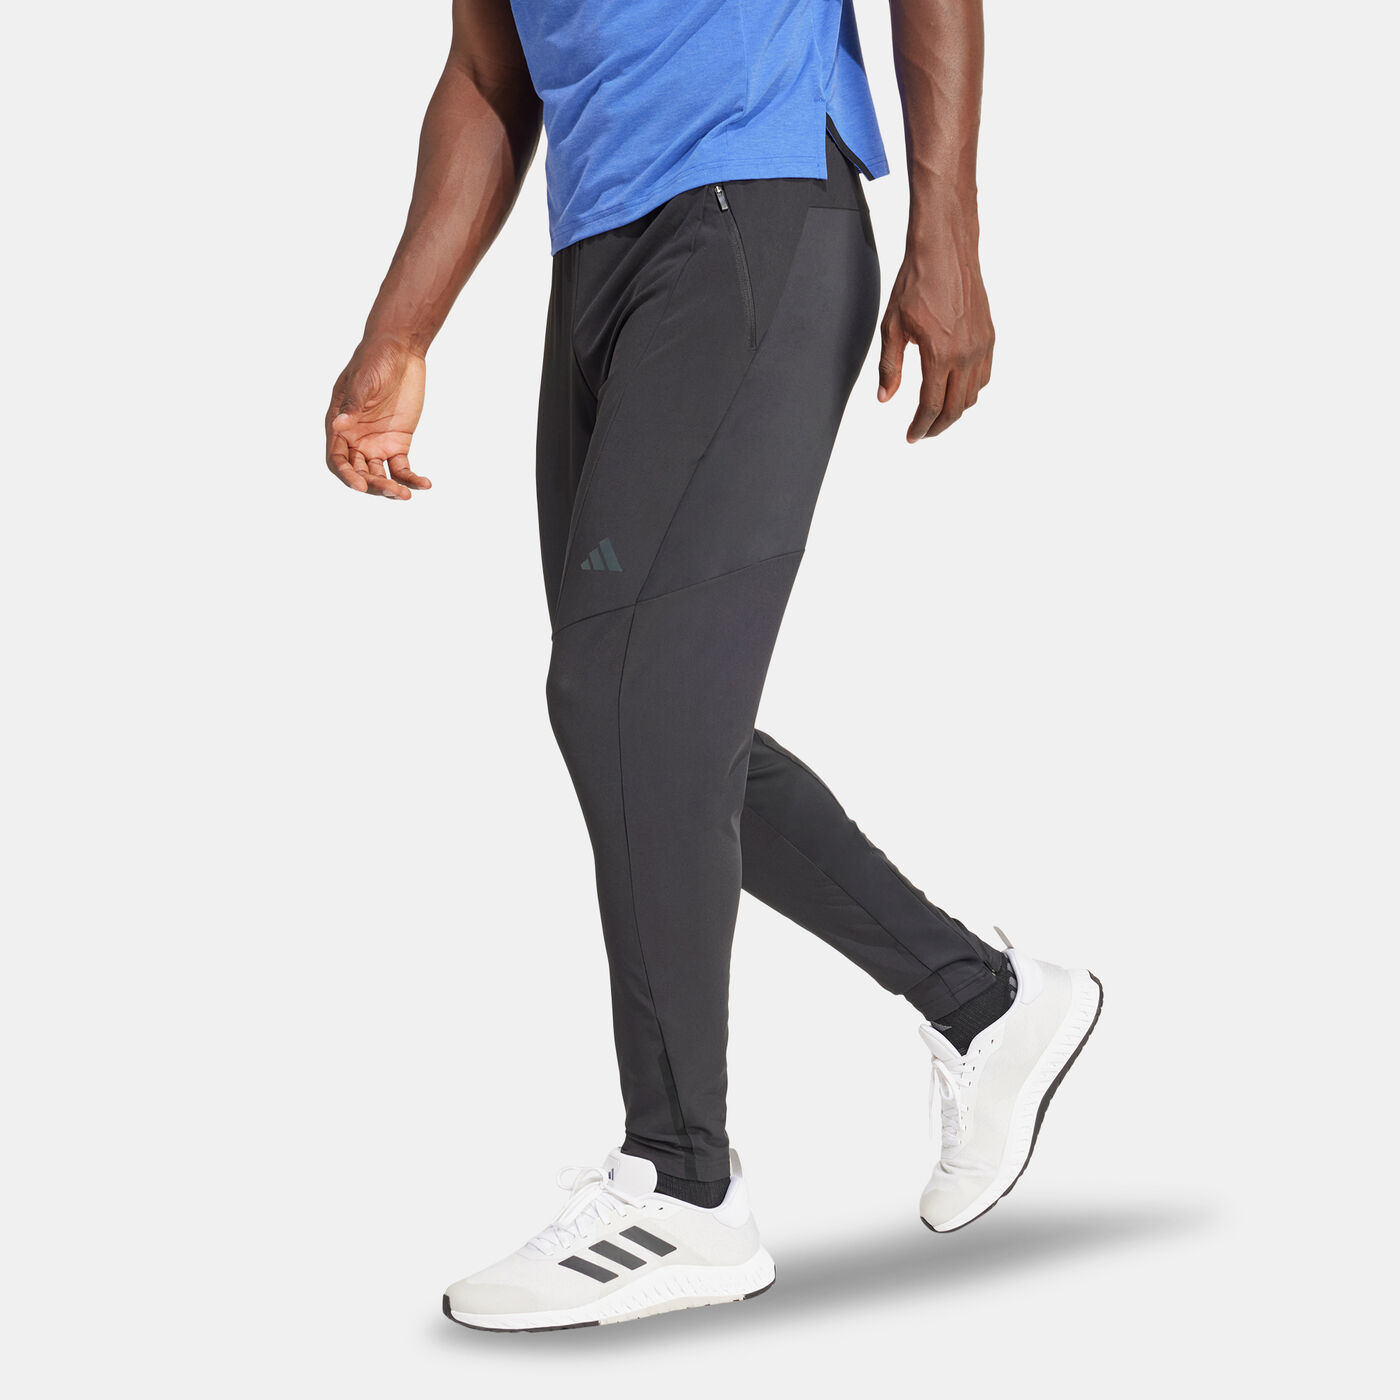 Men's Designed for Training Hybrid Pants